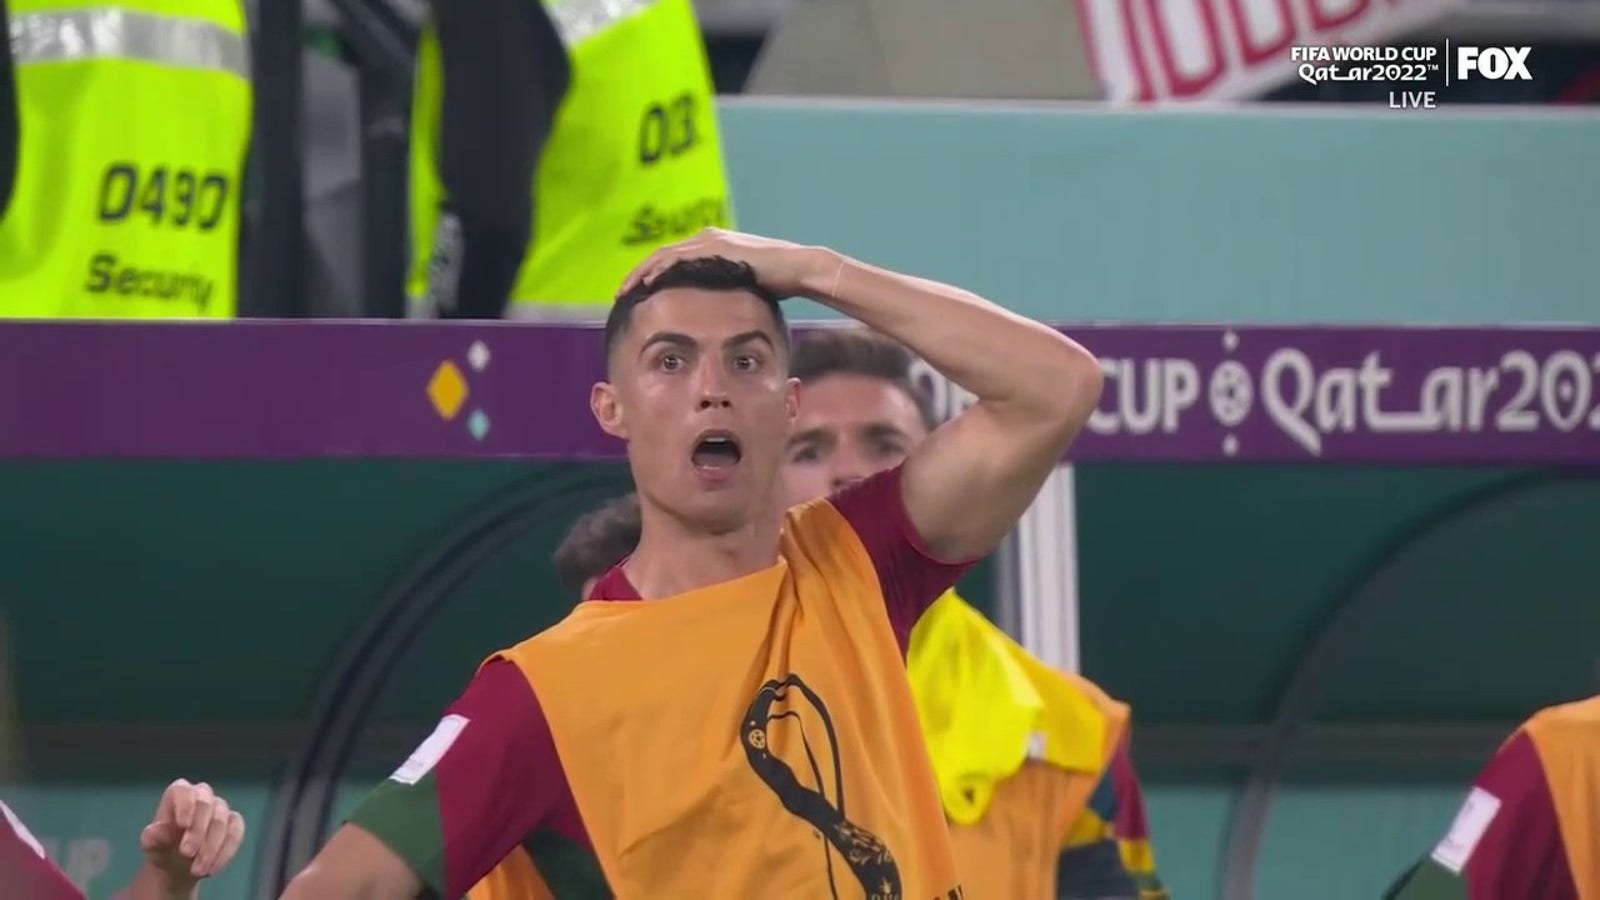 Gana QUASE consegue empatar com Portugal após um erro no final do jogo do goleiro Diogo Costa